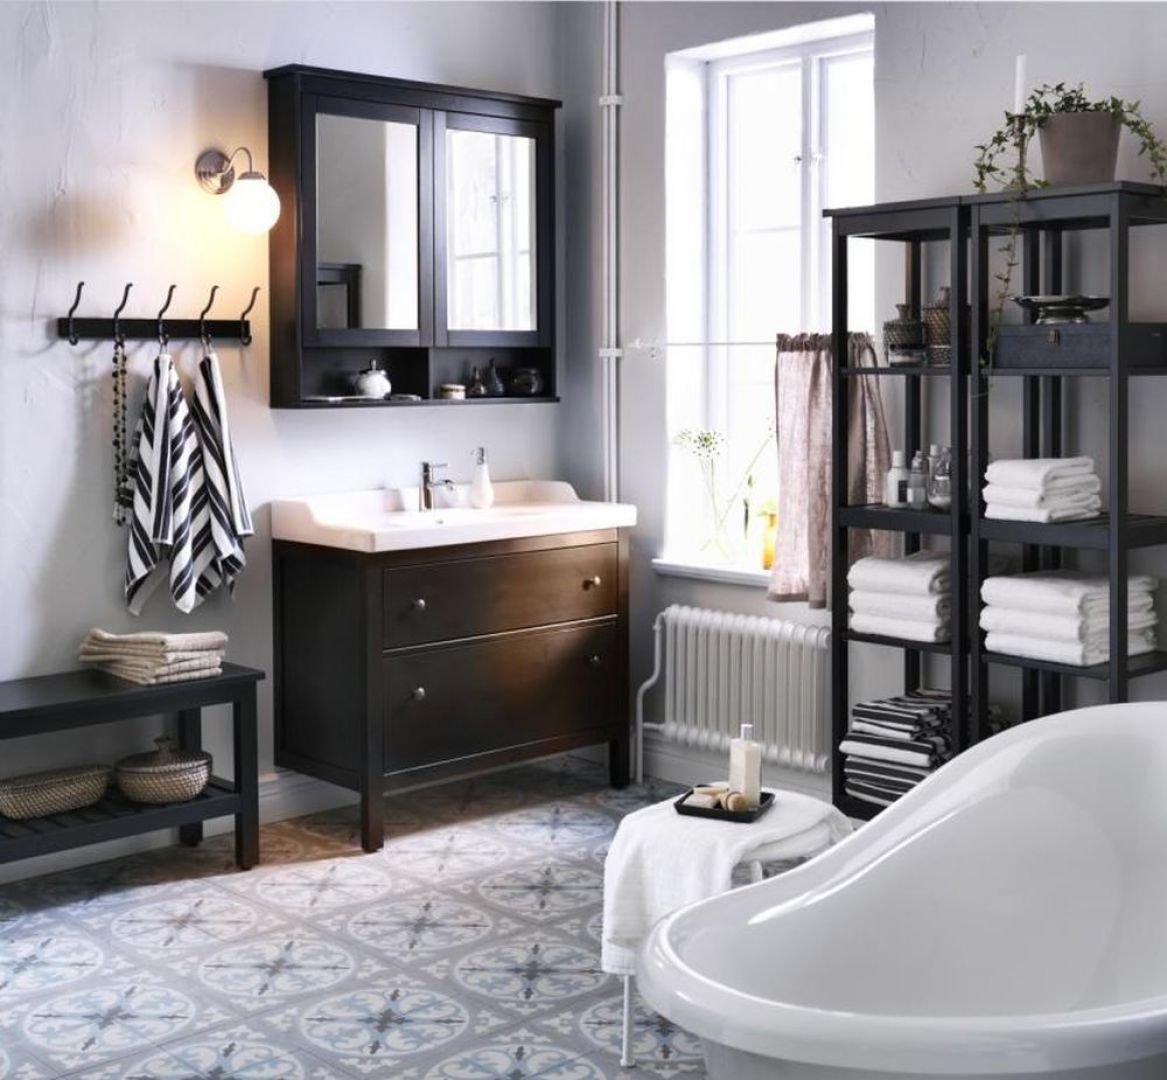 Kolekcja Hemnes w ciemnym kolorze brązu nada łazience elegancki styl. Fot. IKEA